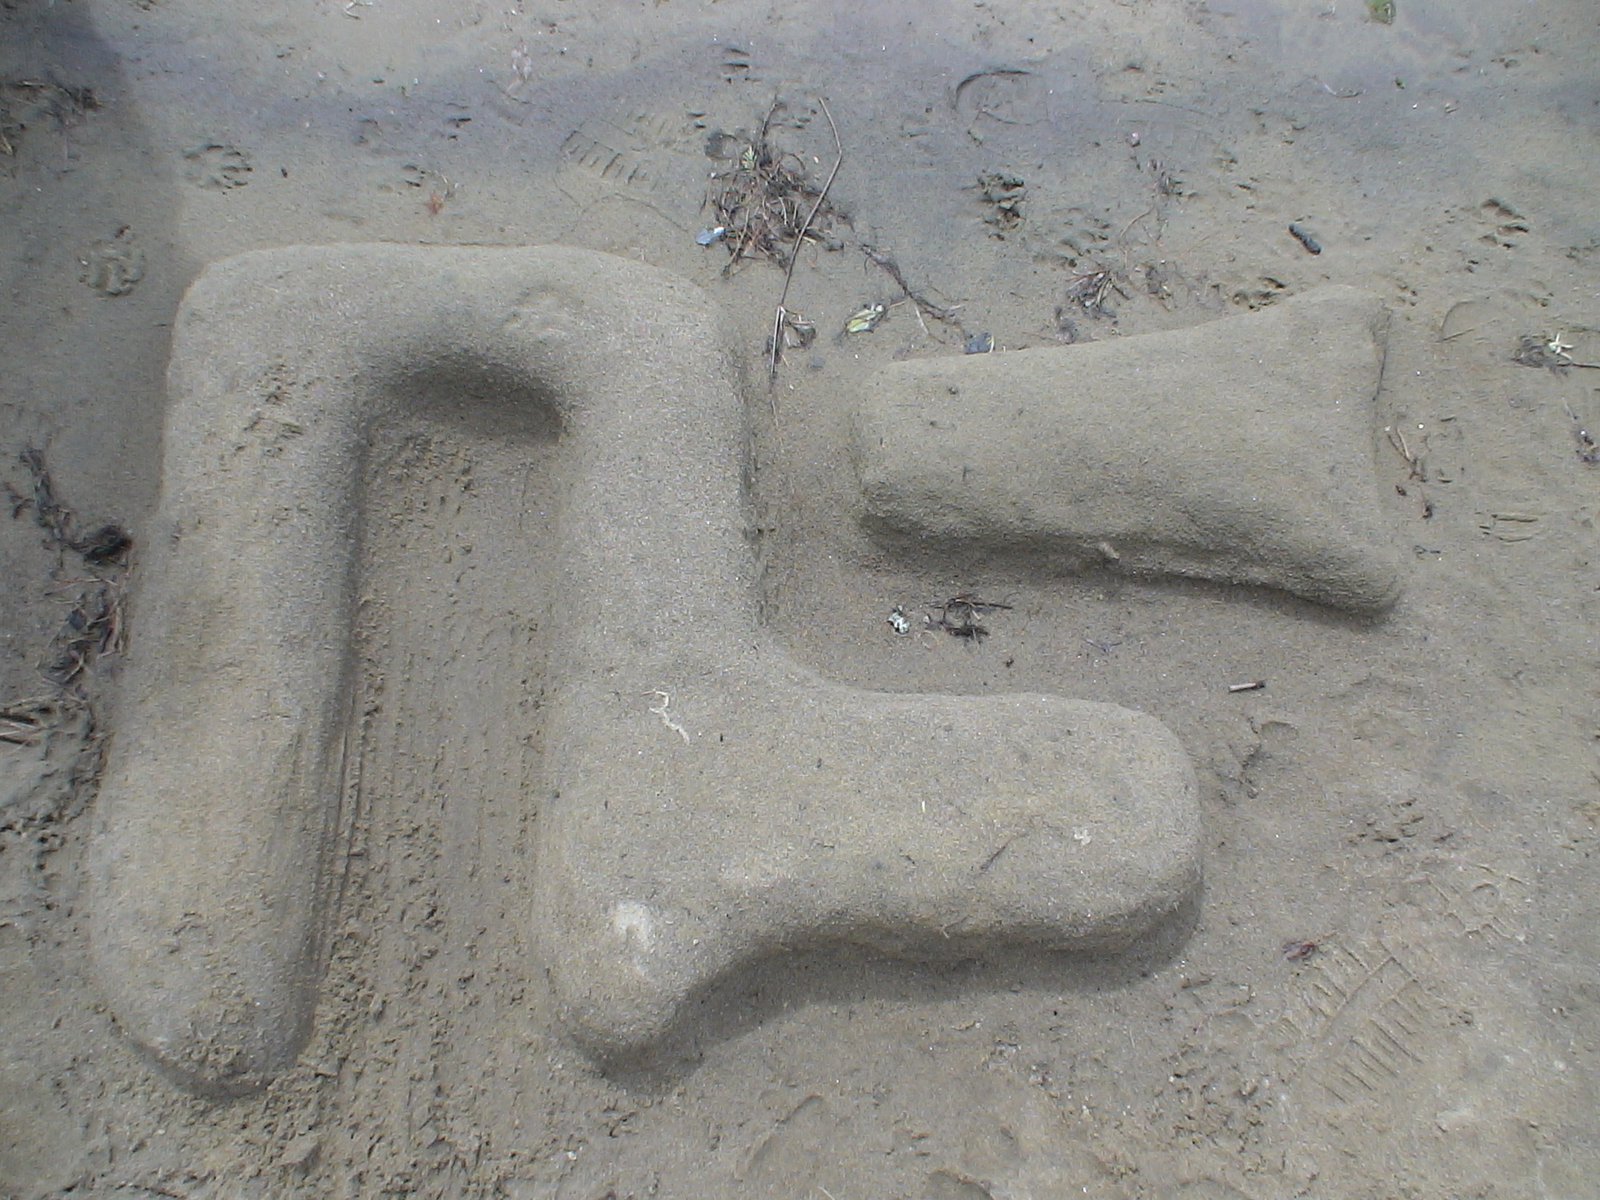 Ns logo on the beach